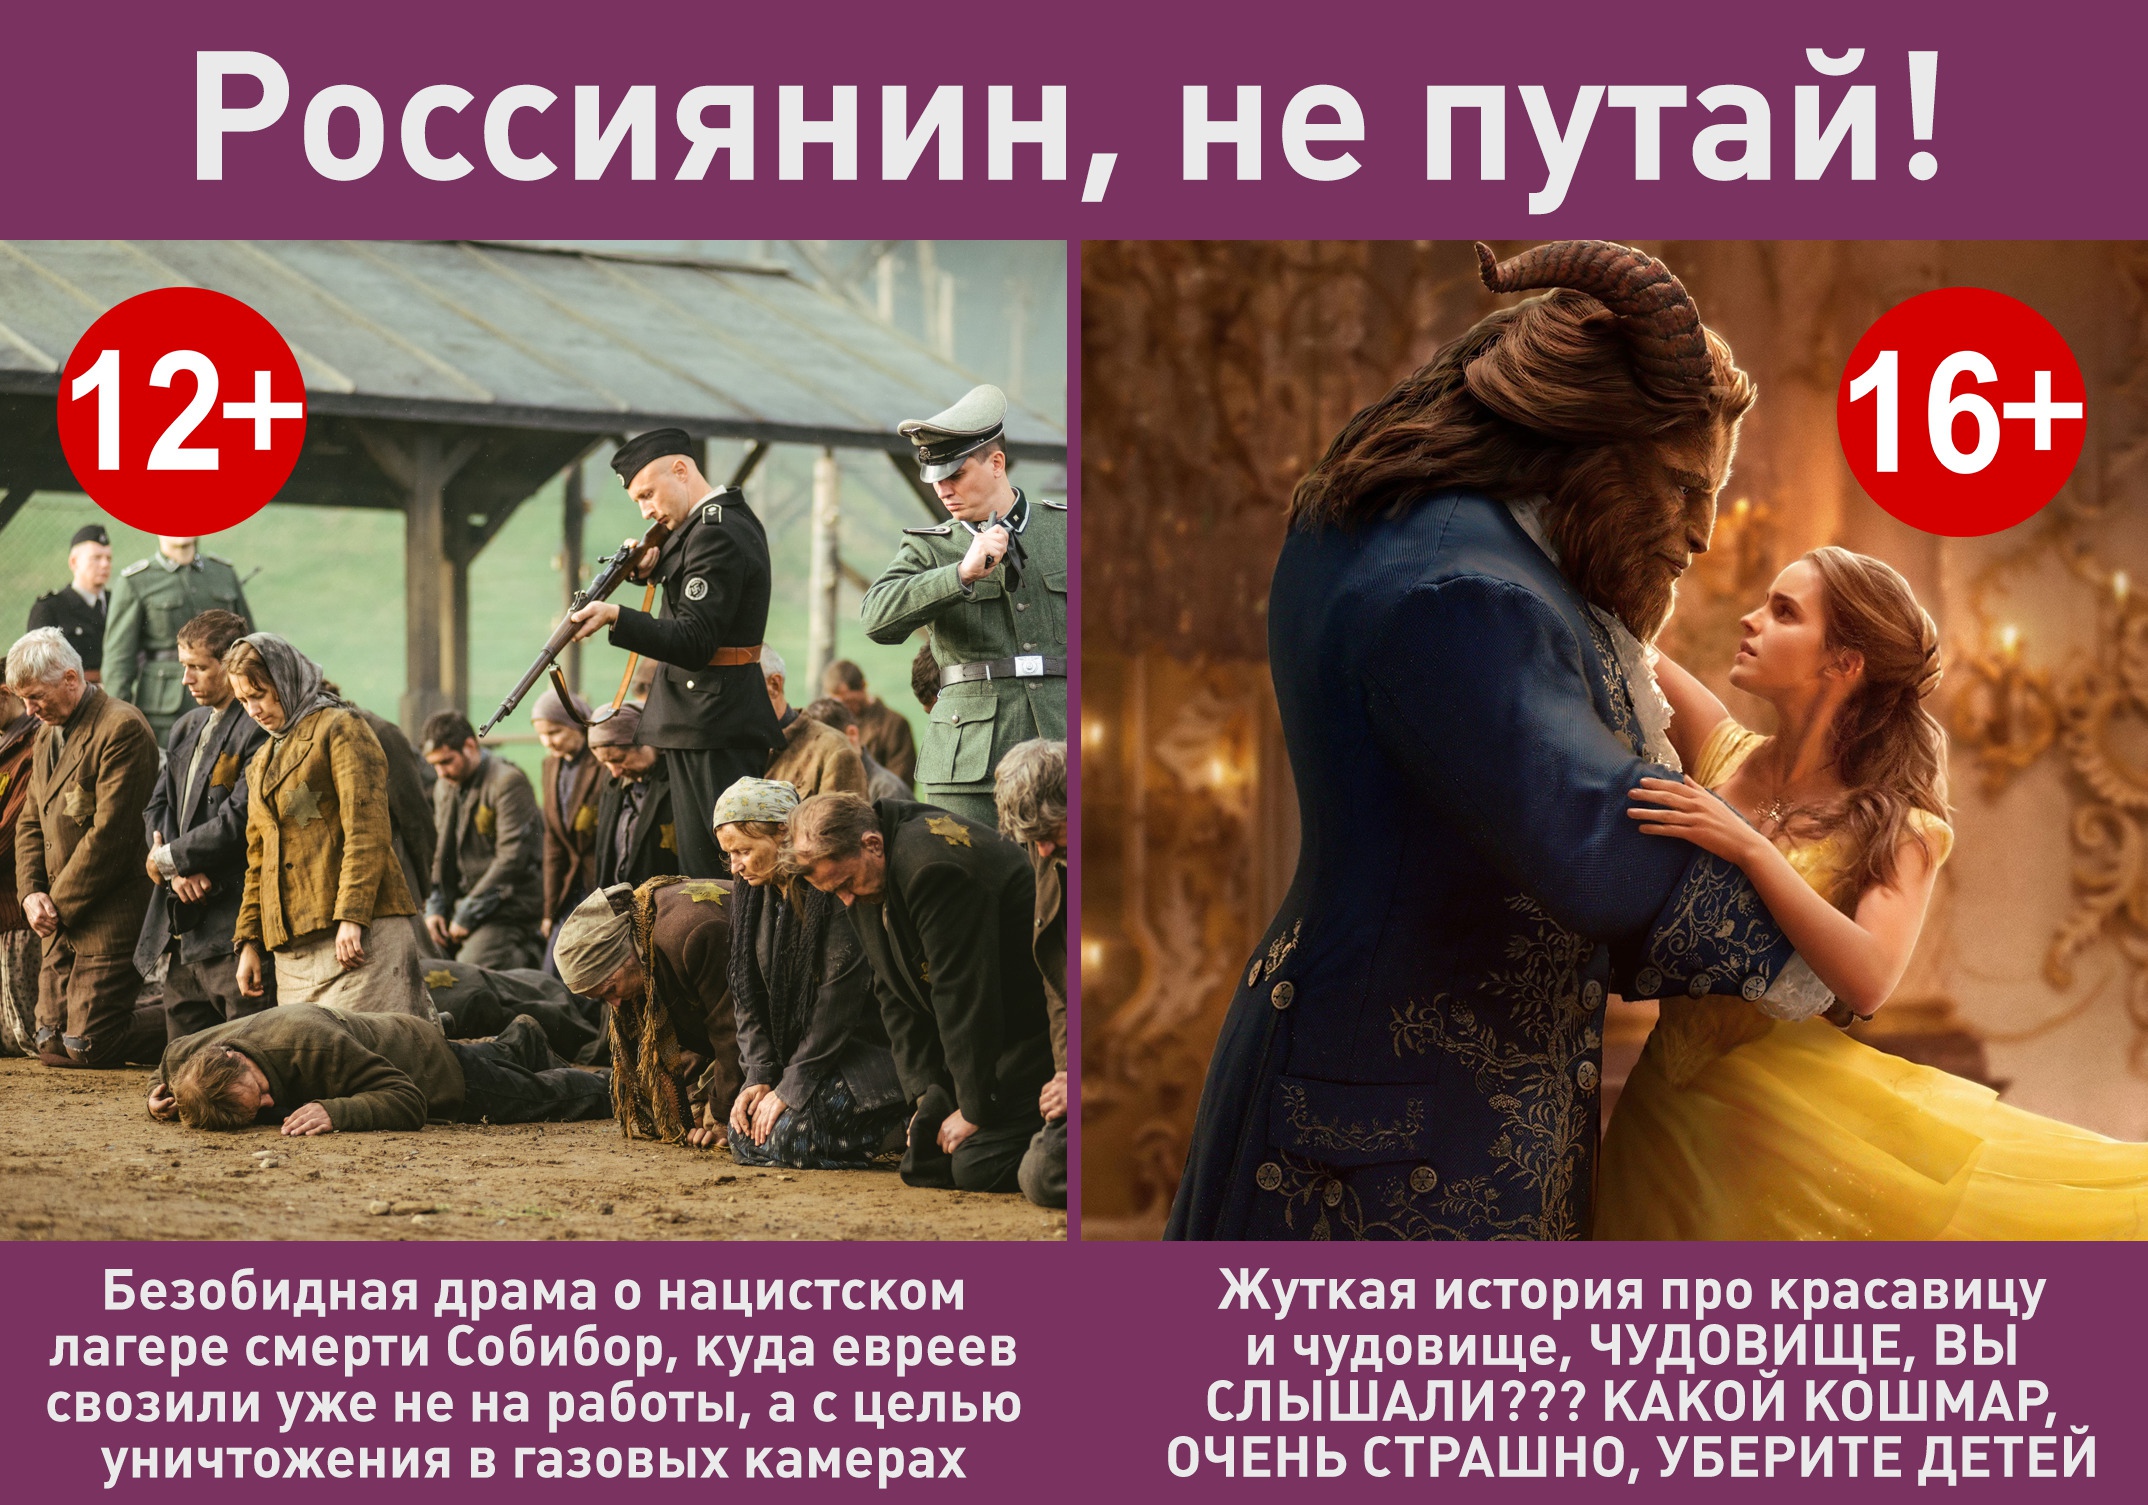 Песни возрастные ограничения. Возрастные ограничения в России.